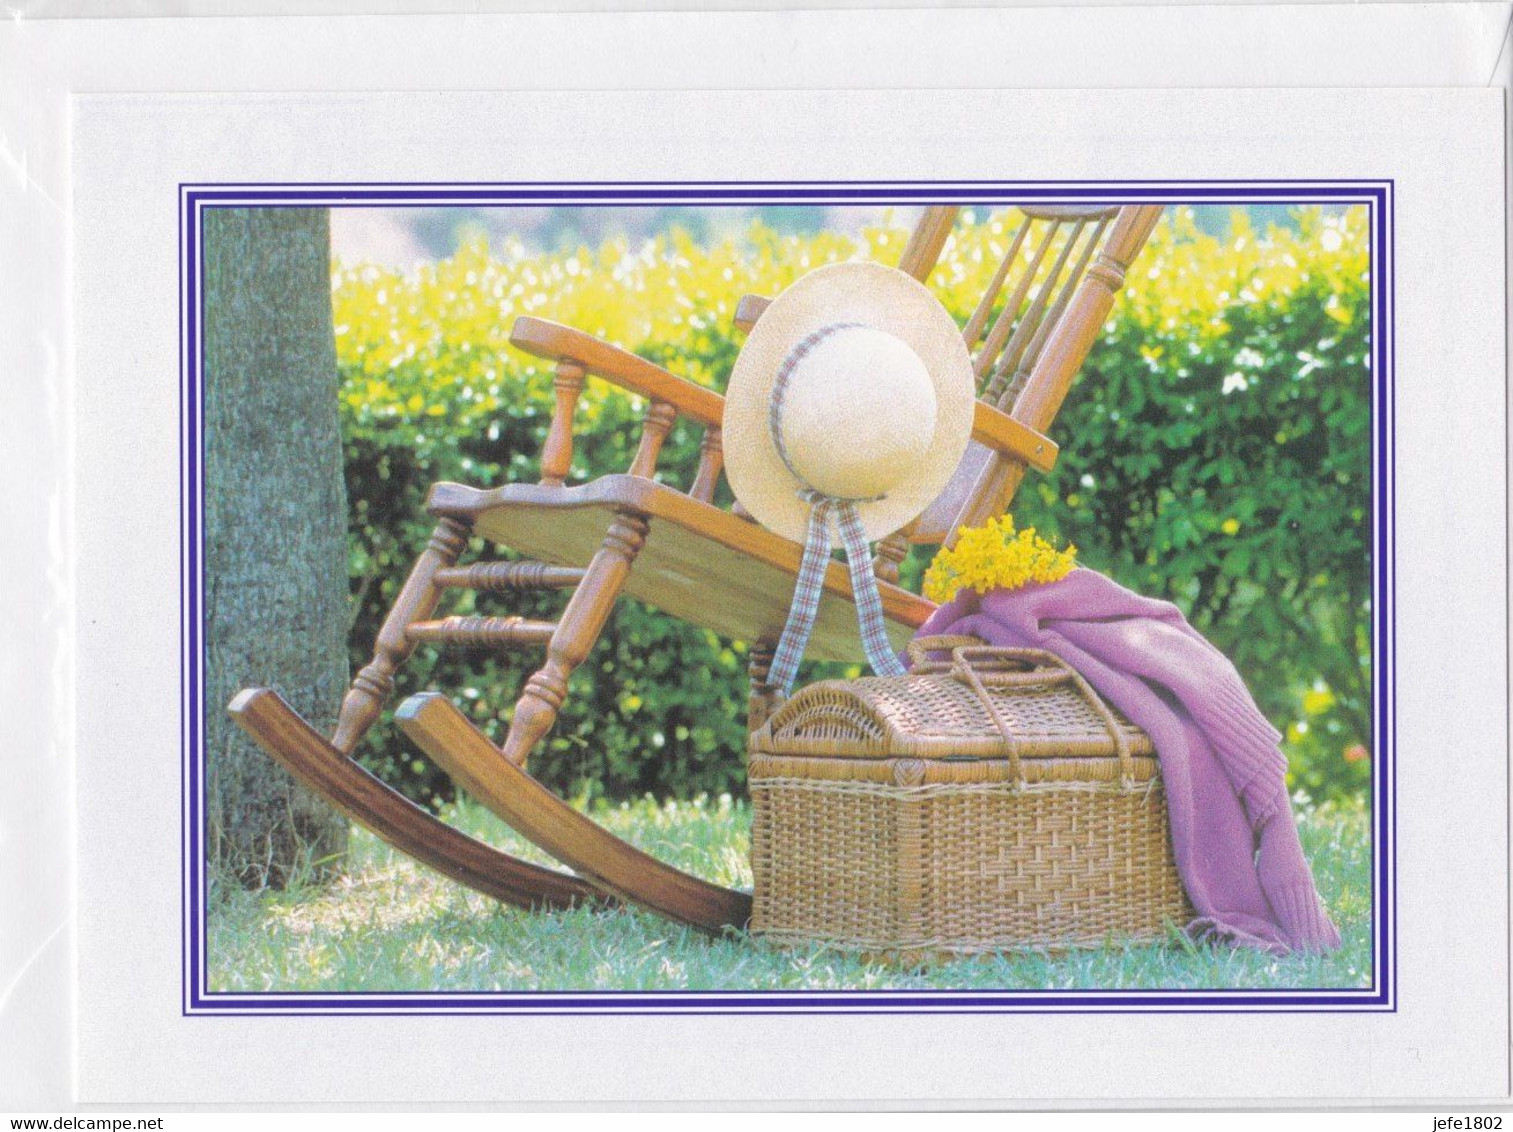 Postogram 121 / 97 - Ontspanning In De Tuin - Fotostock - Relaxed In The Garden - Postogram